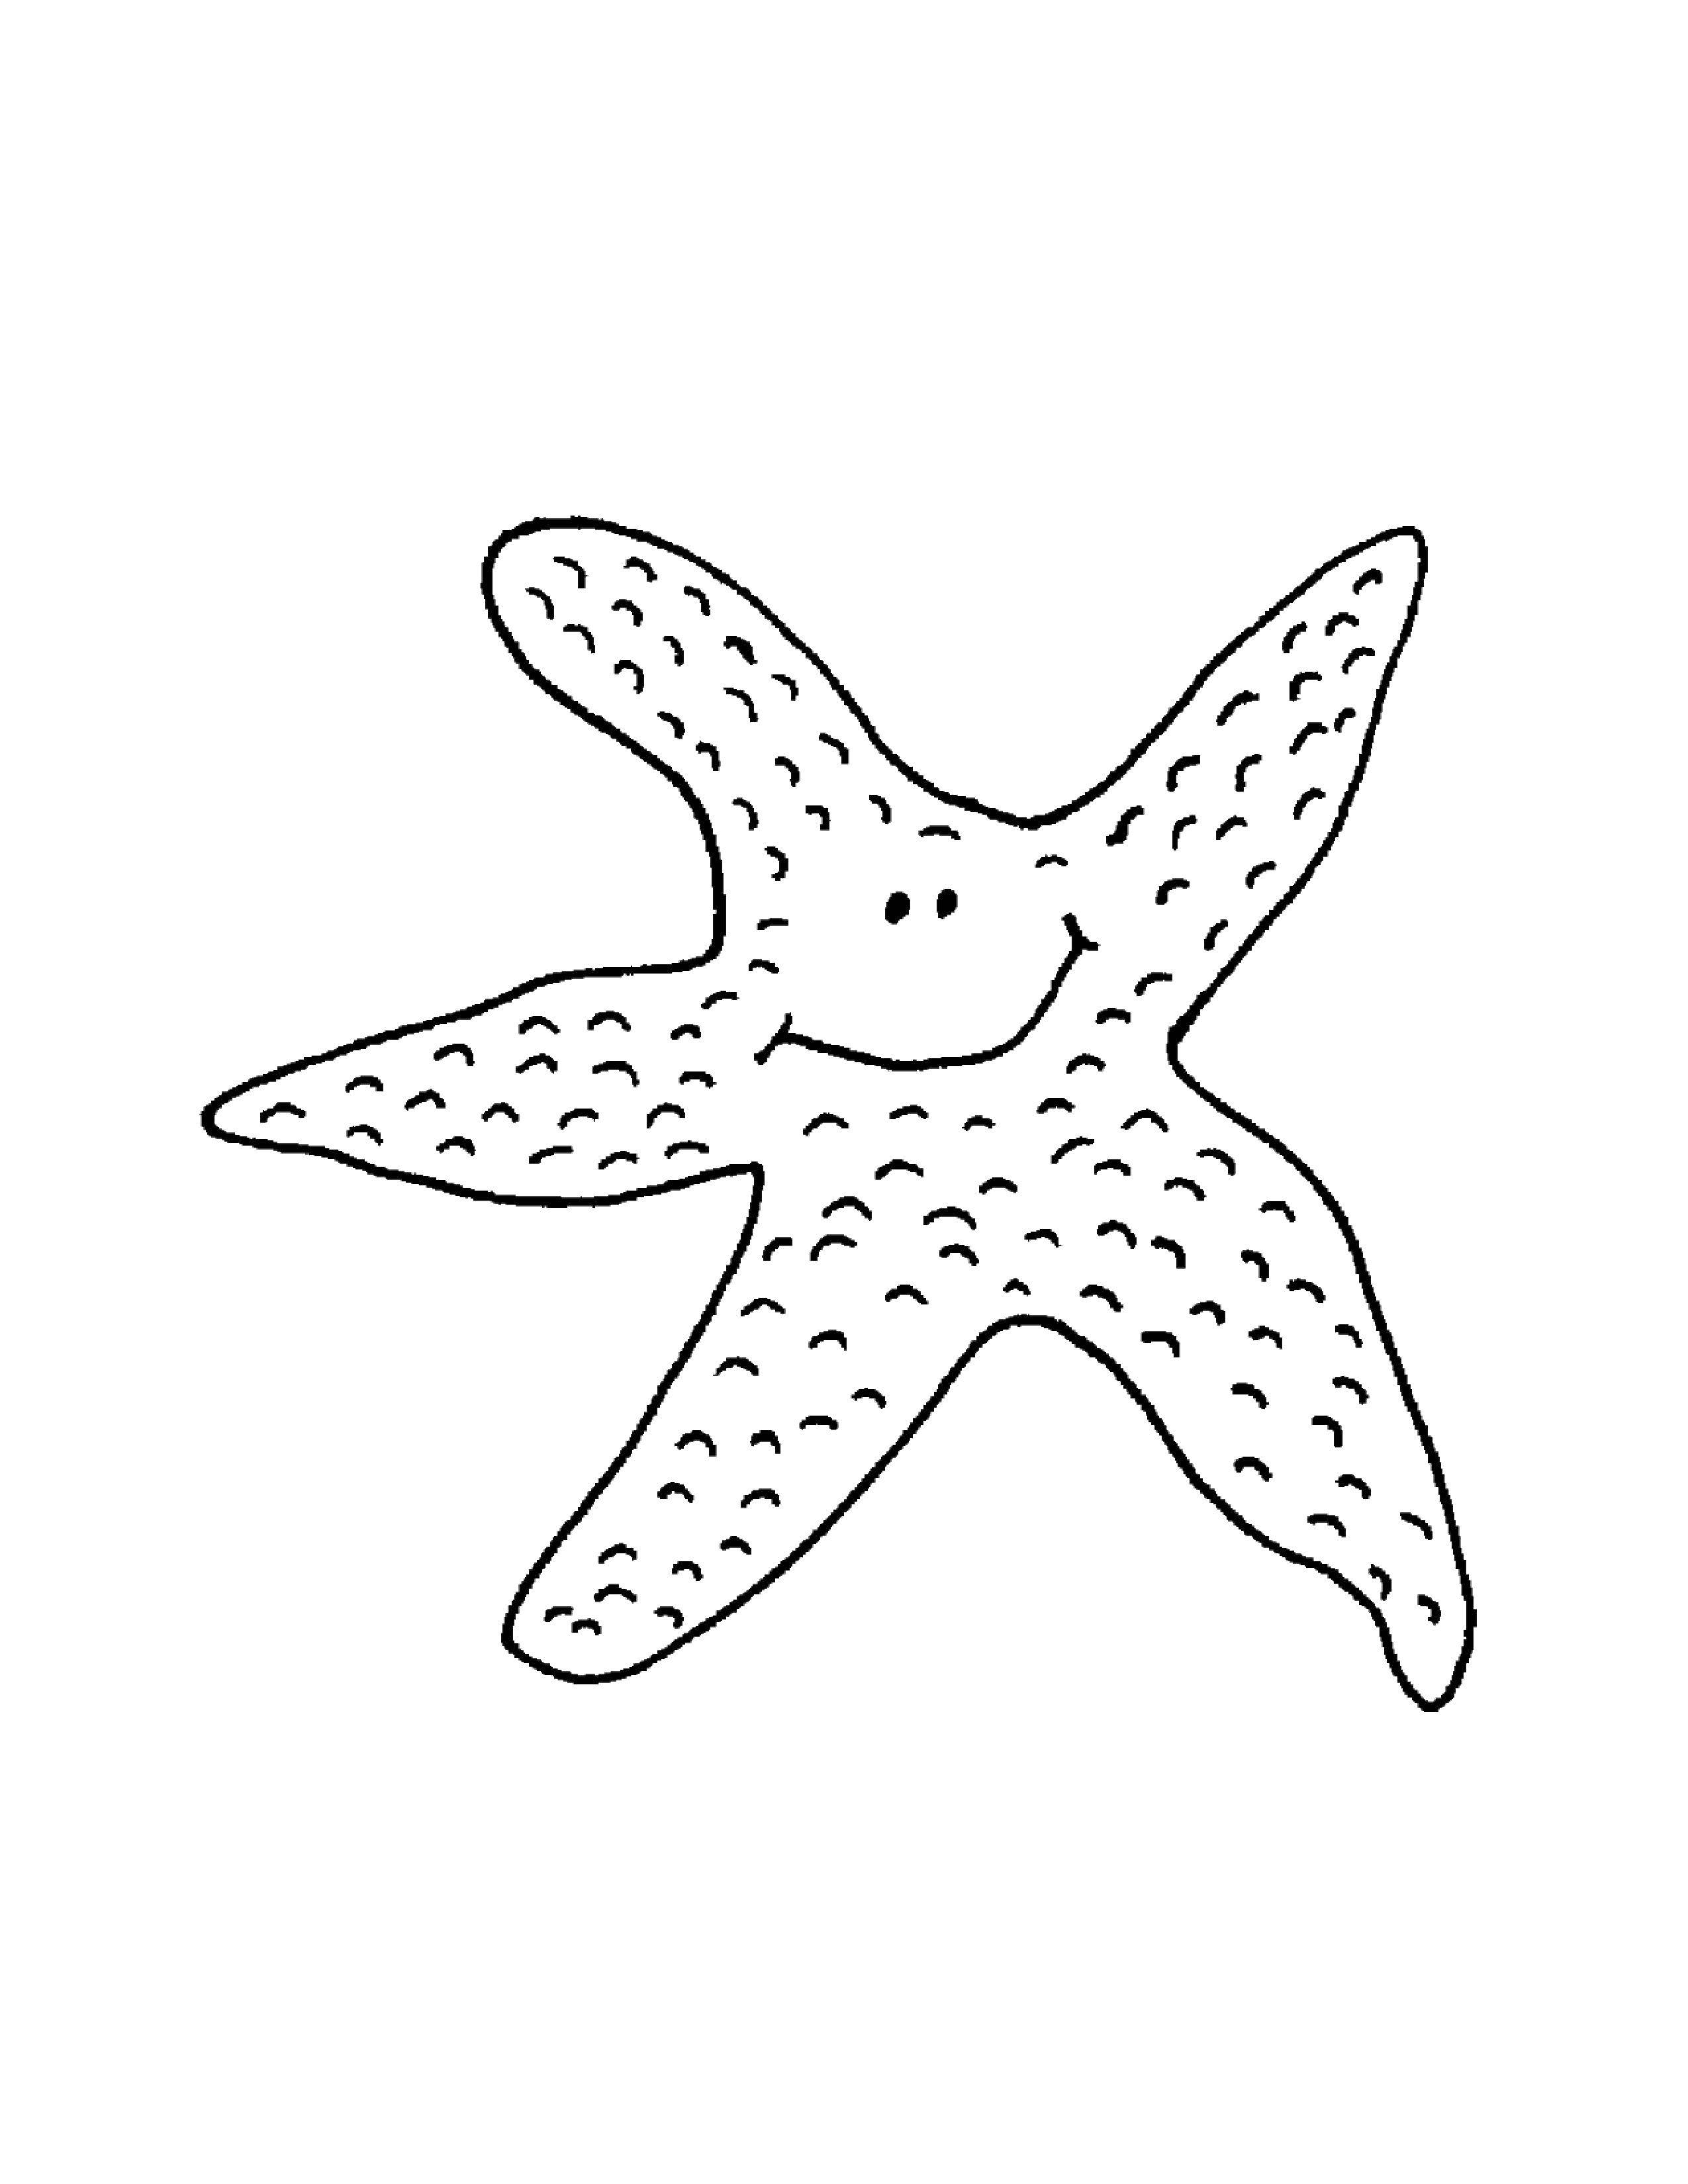 Название: Раскраска Морская звездочка. Категория: Морские животные. Теги: Подводный мир, морская звезда.